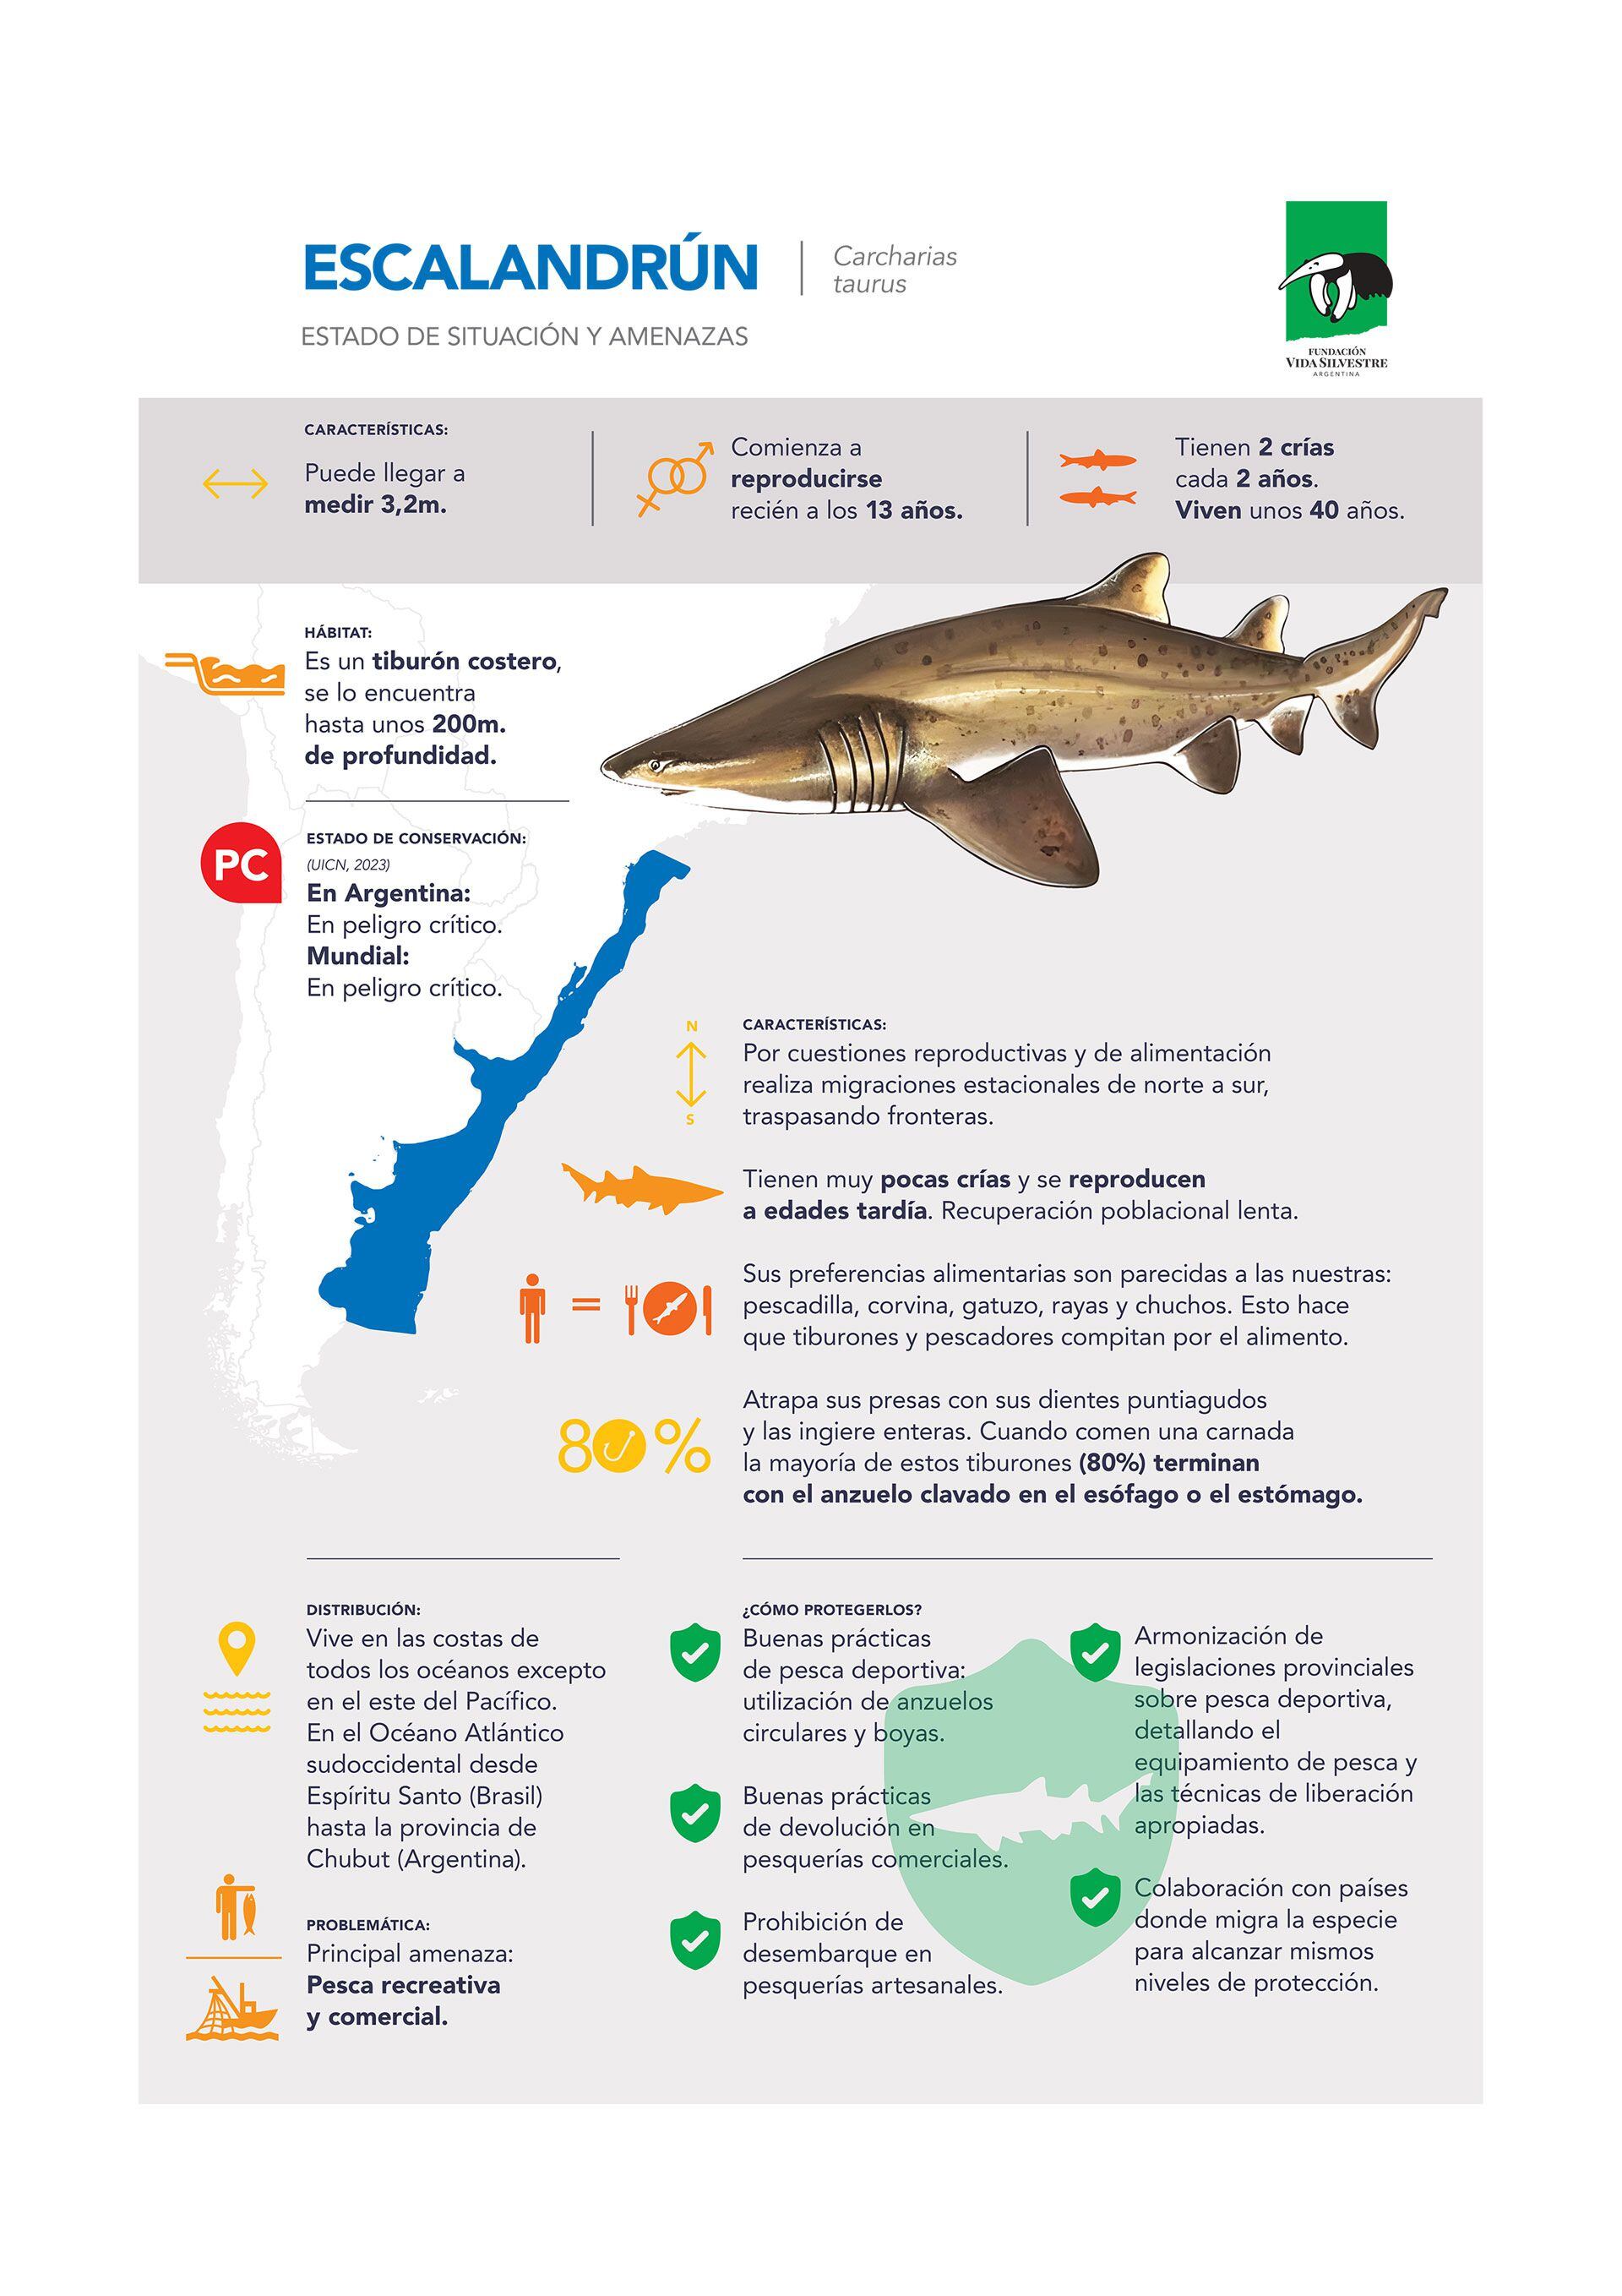 Tiburón escalandrún especie migratoria en peligro de extinción